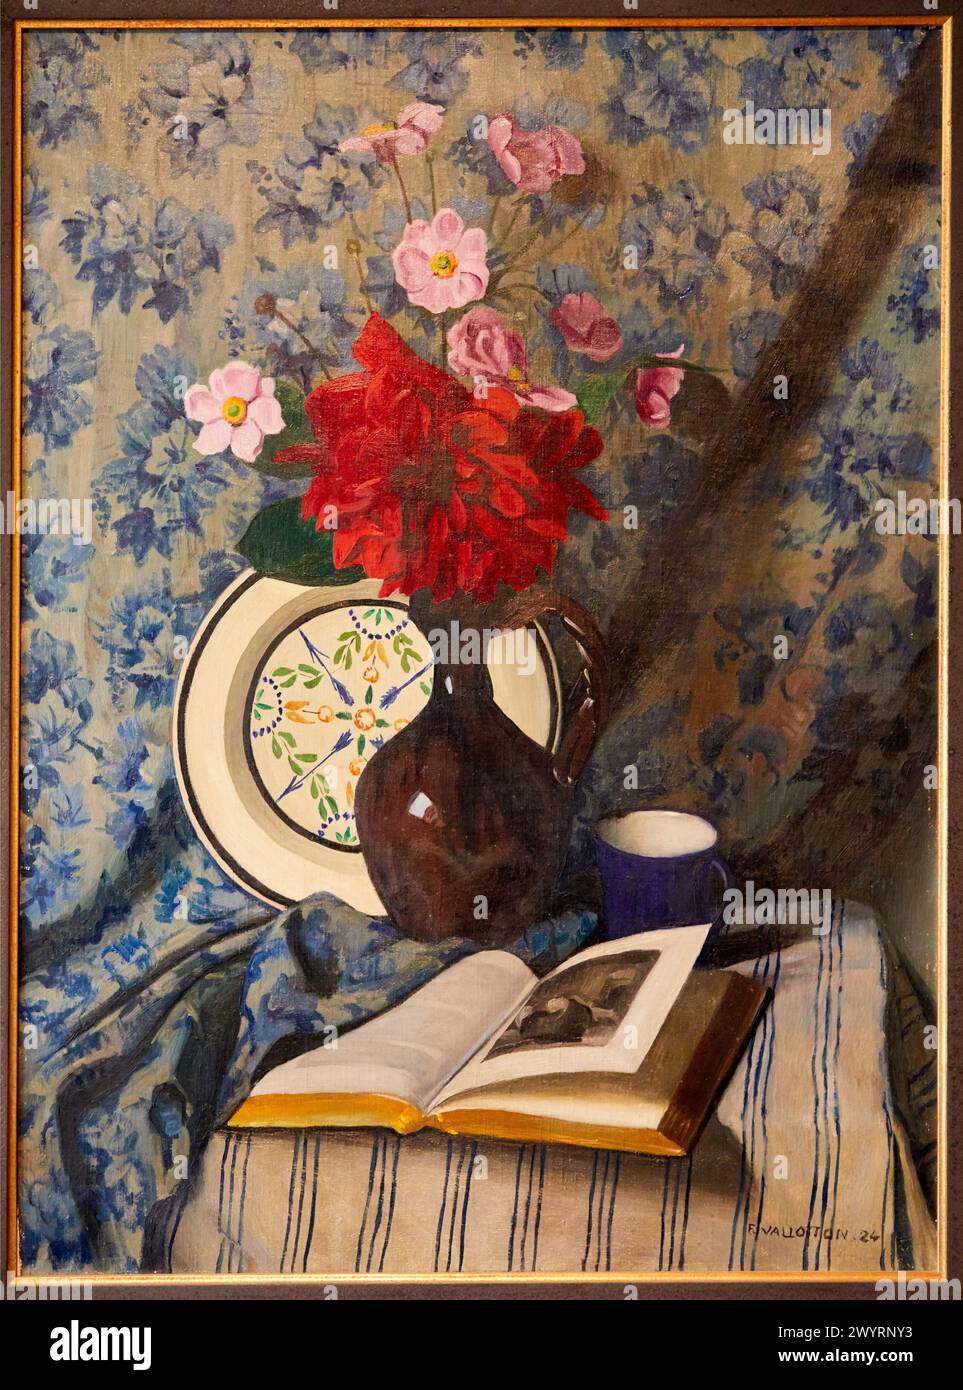 Dahlien rouges et Livre ouvert, 1924, Felix Edouard Vallotton, Musée d'Art Moderne, Troyes, Region Champagne-Ardenne, Aube, Frankreich, Europa Stockfoto